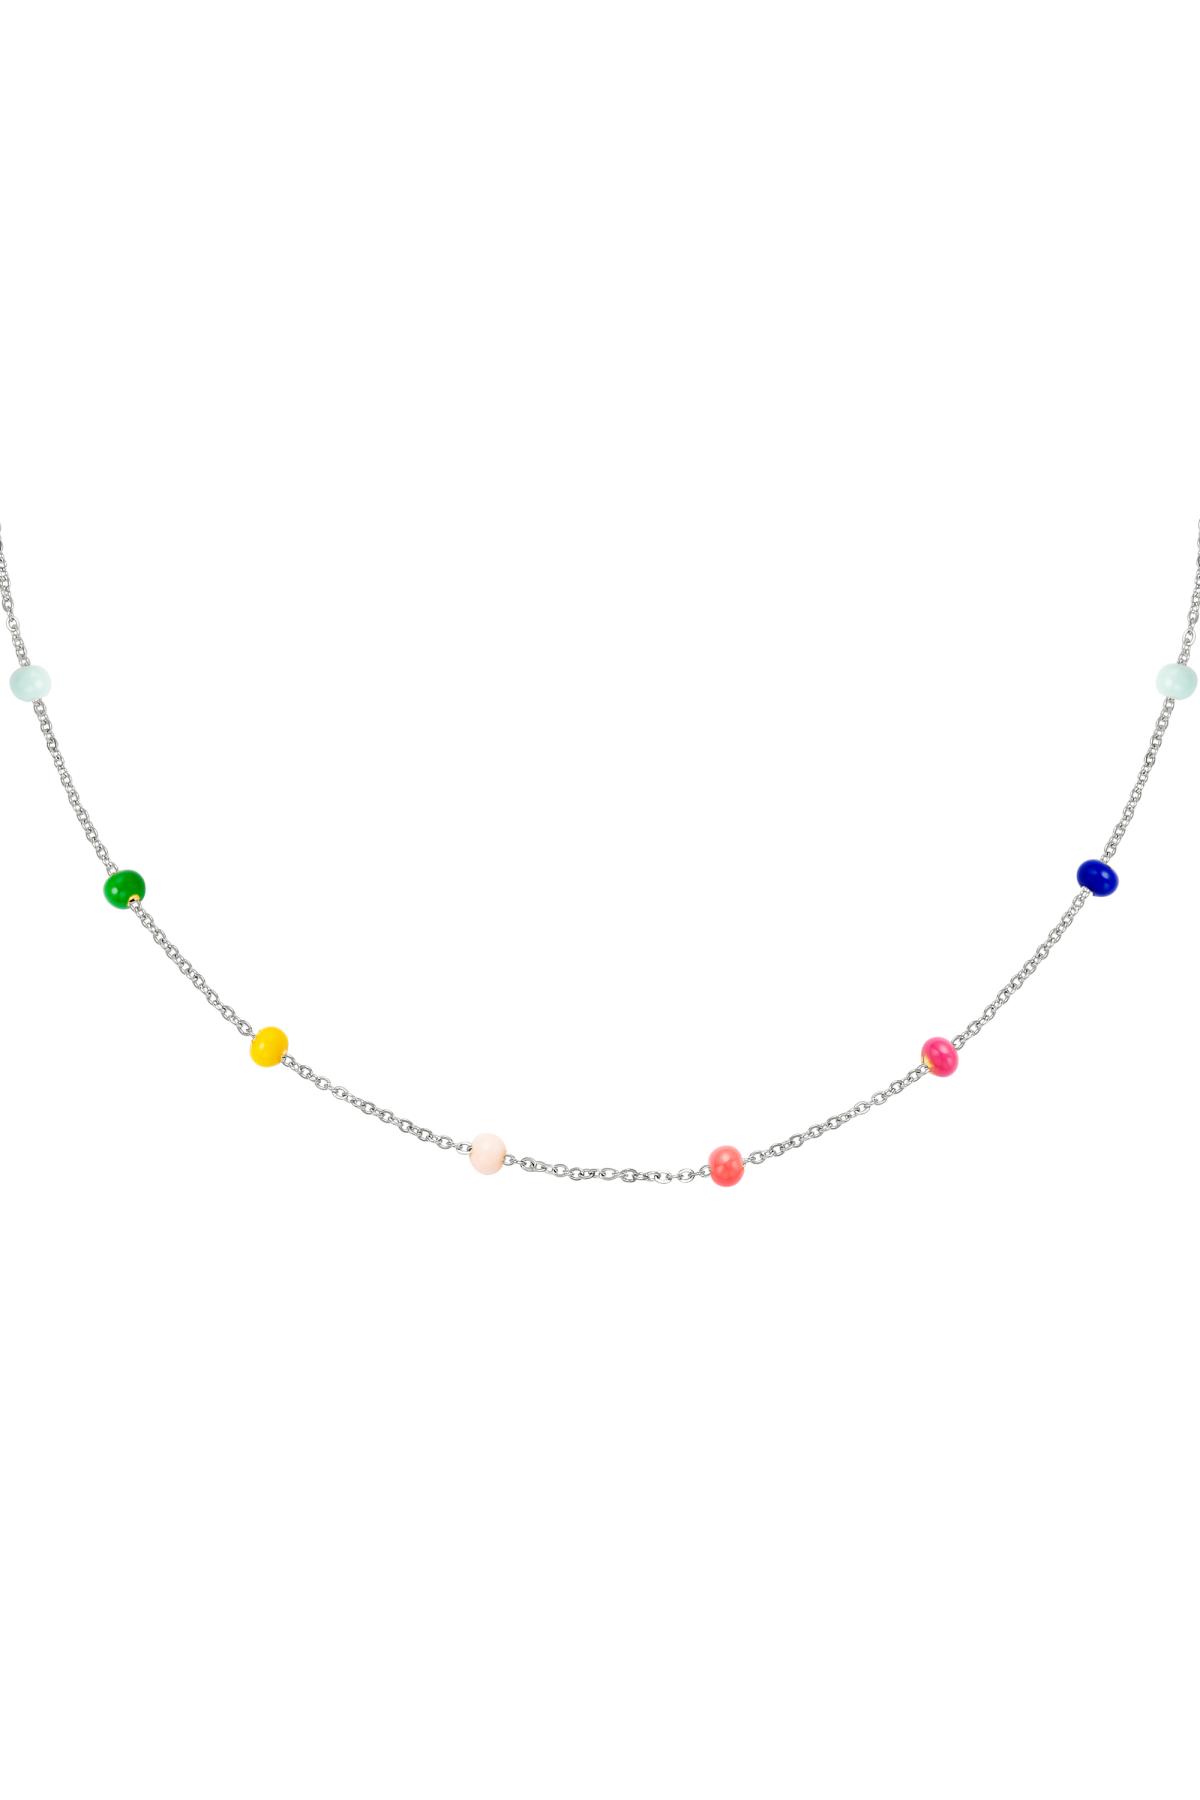 Collier perles colorées Argenté Acier inoxydable 